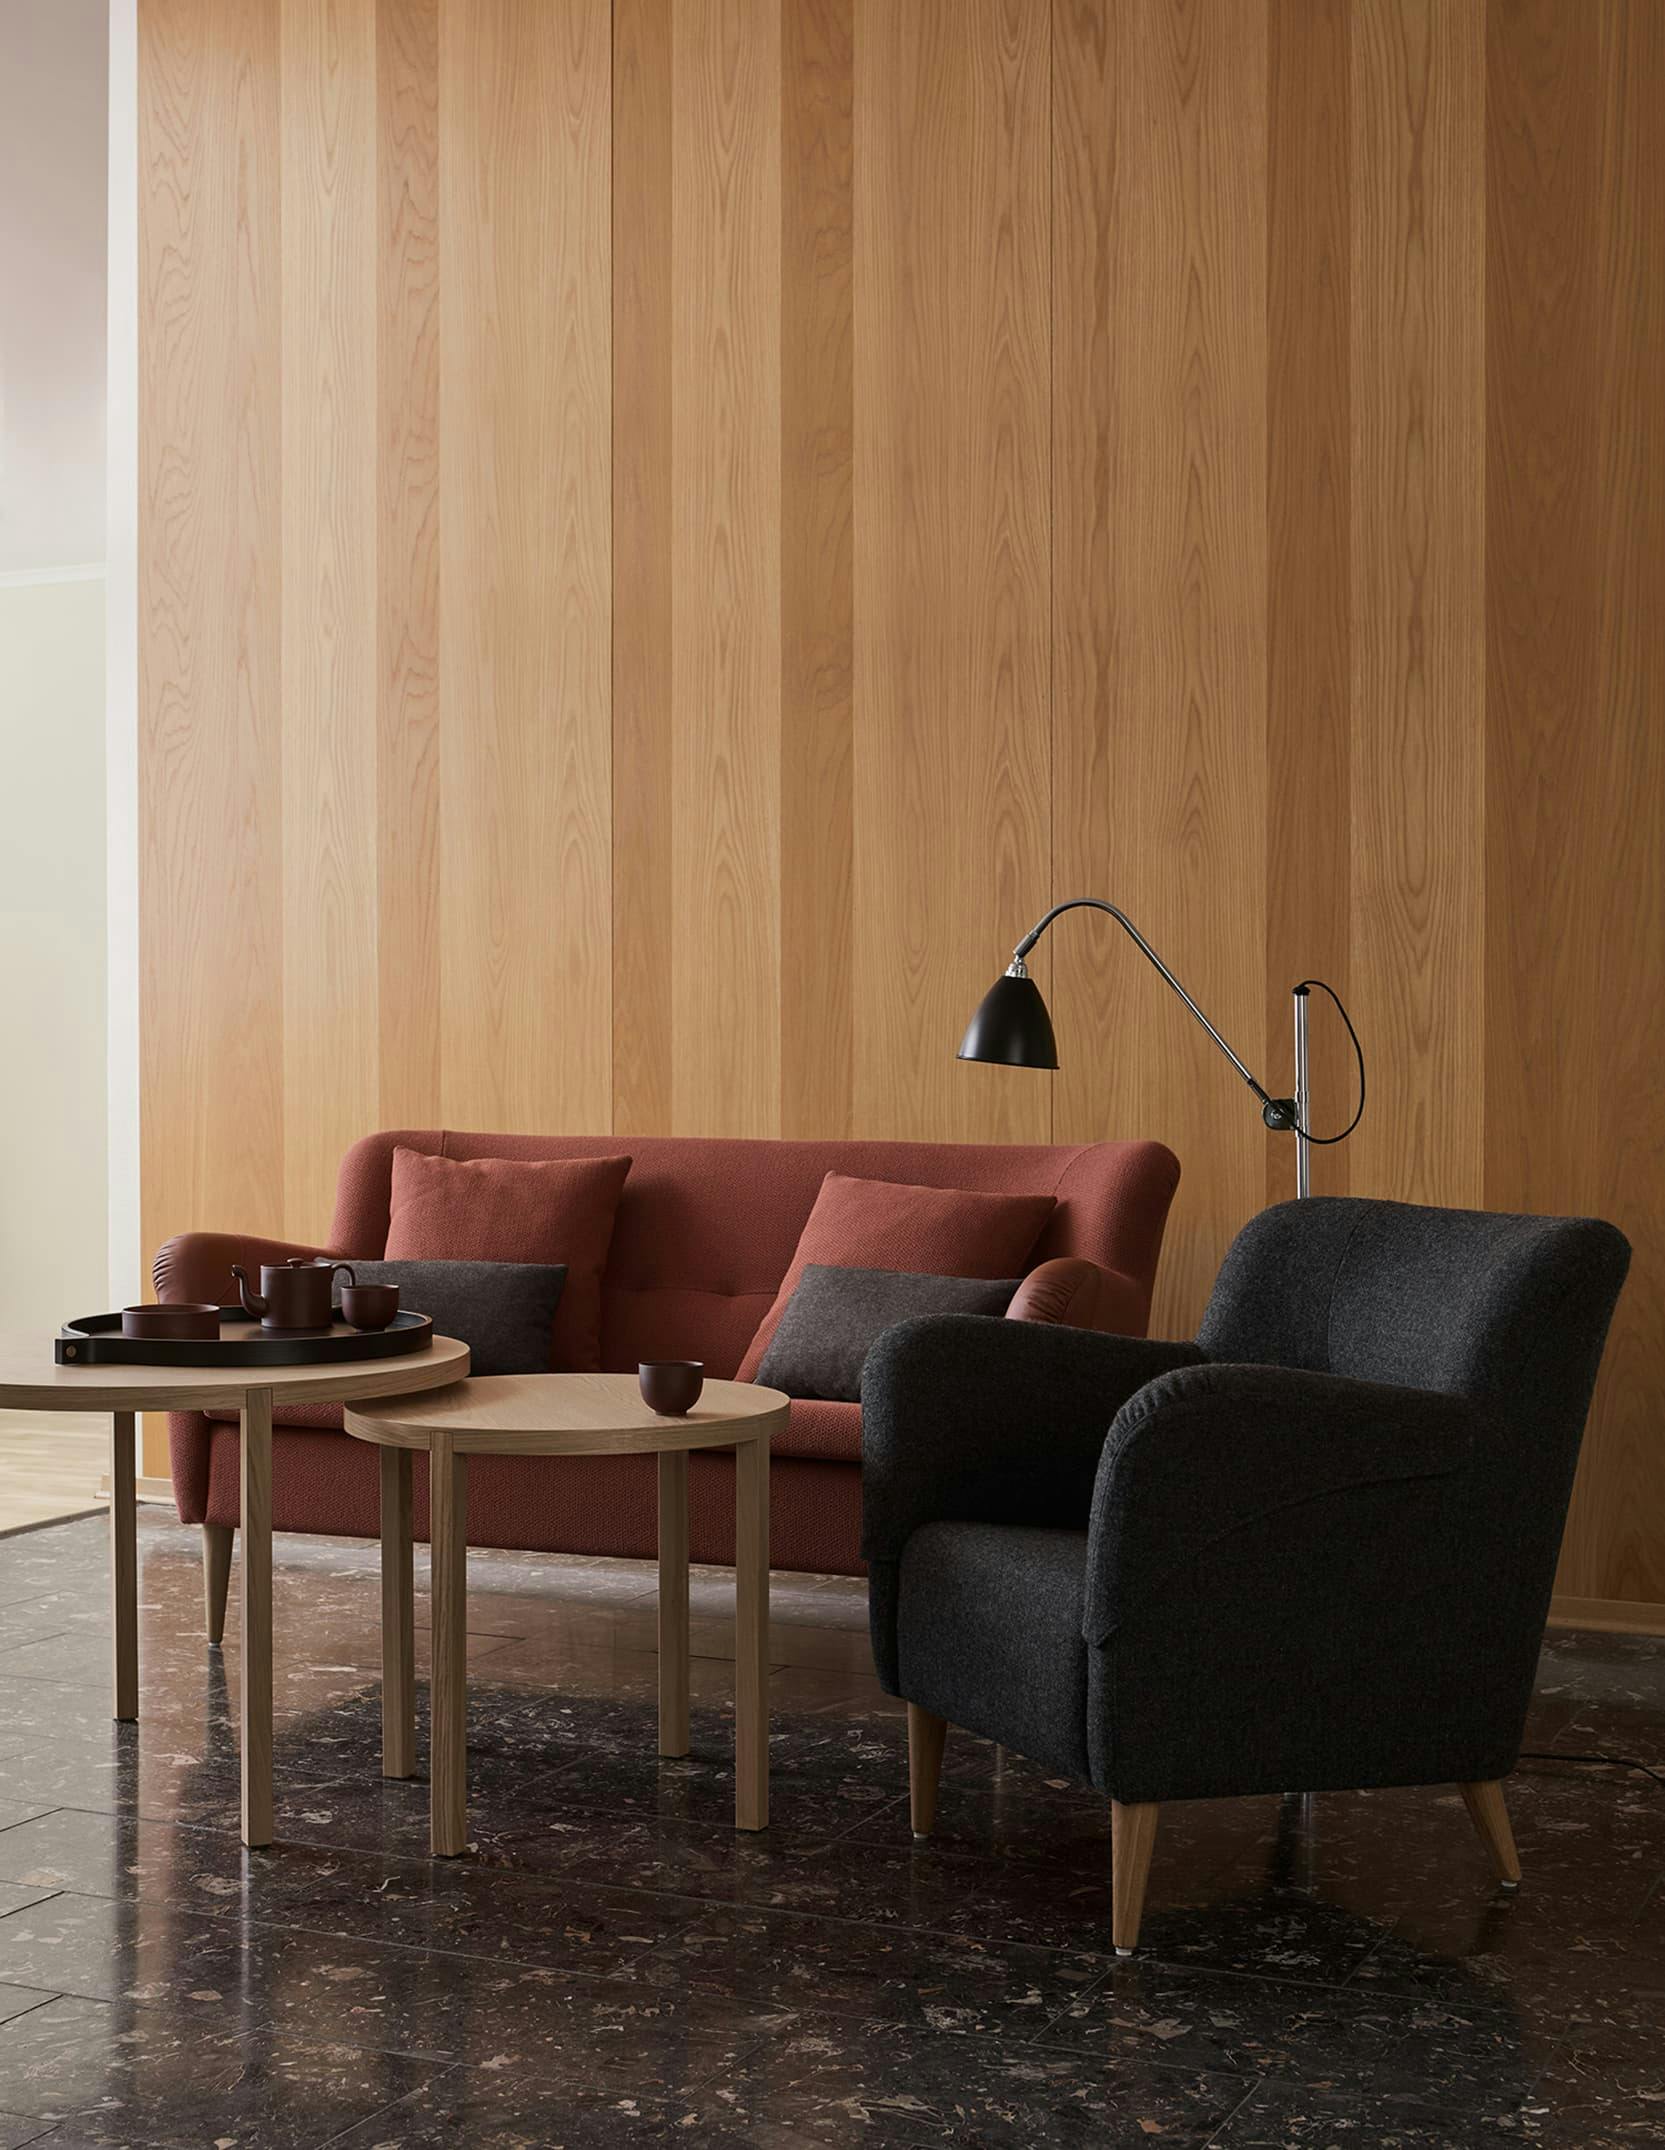 Graciösa Nova soffa och fåtölj med armstödsskydd bidrar med både funktion och hemkänsla. Bespoke lounge är en ny stilren och lättplacerad serie bord i flera olika storlekar och utföranden.